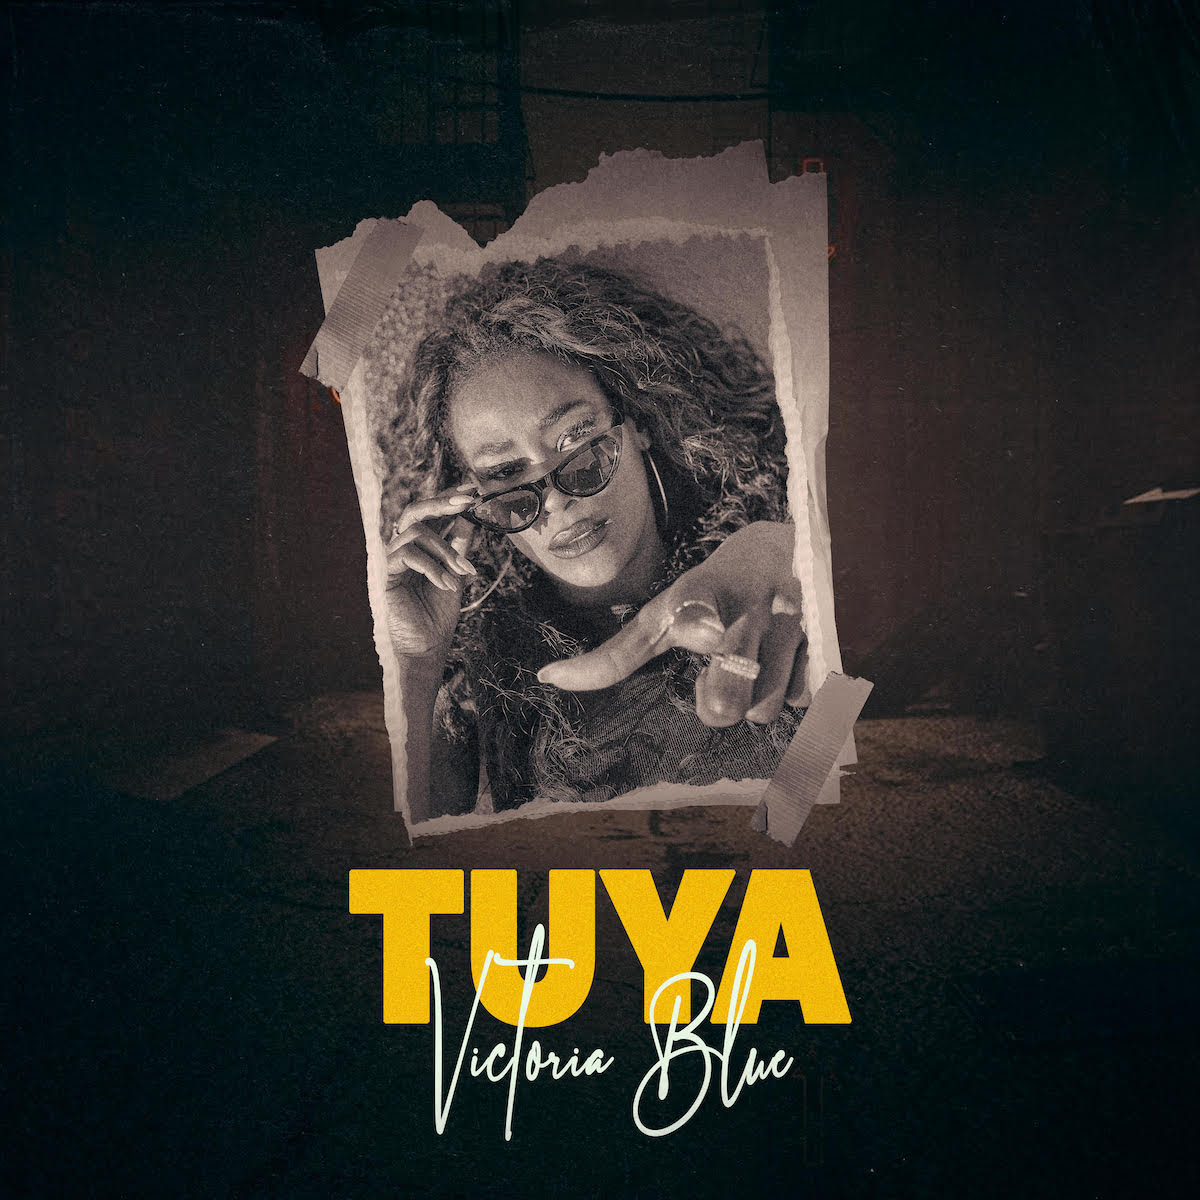 Victoria Blue, reina del pop/R&B con sabor latino, presenta el sencillo “Tuya” – @Victoria_Blue